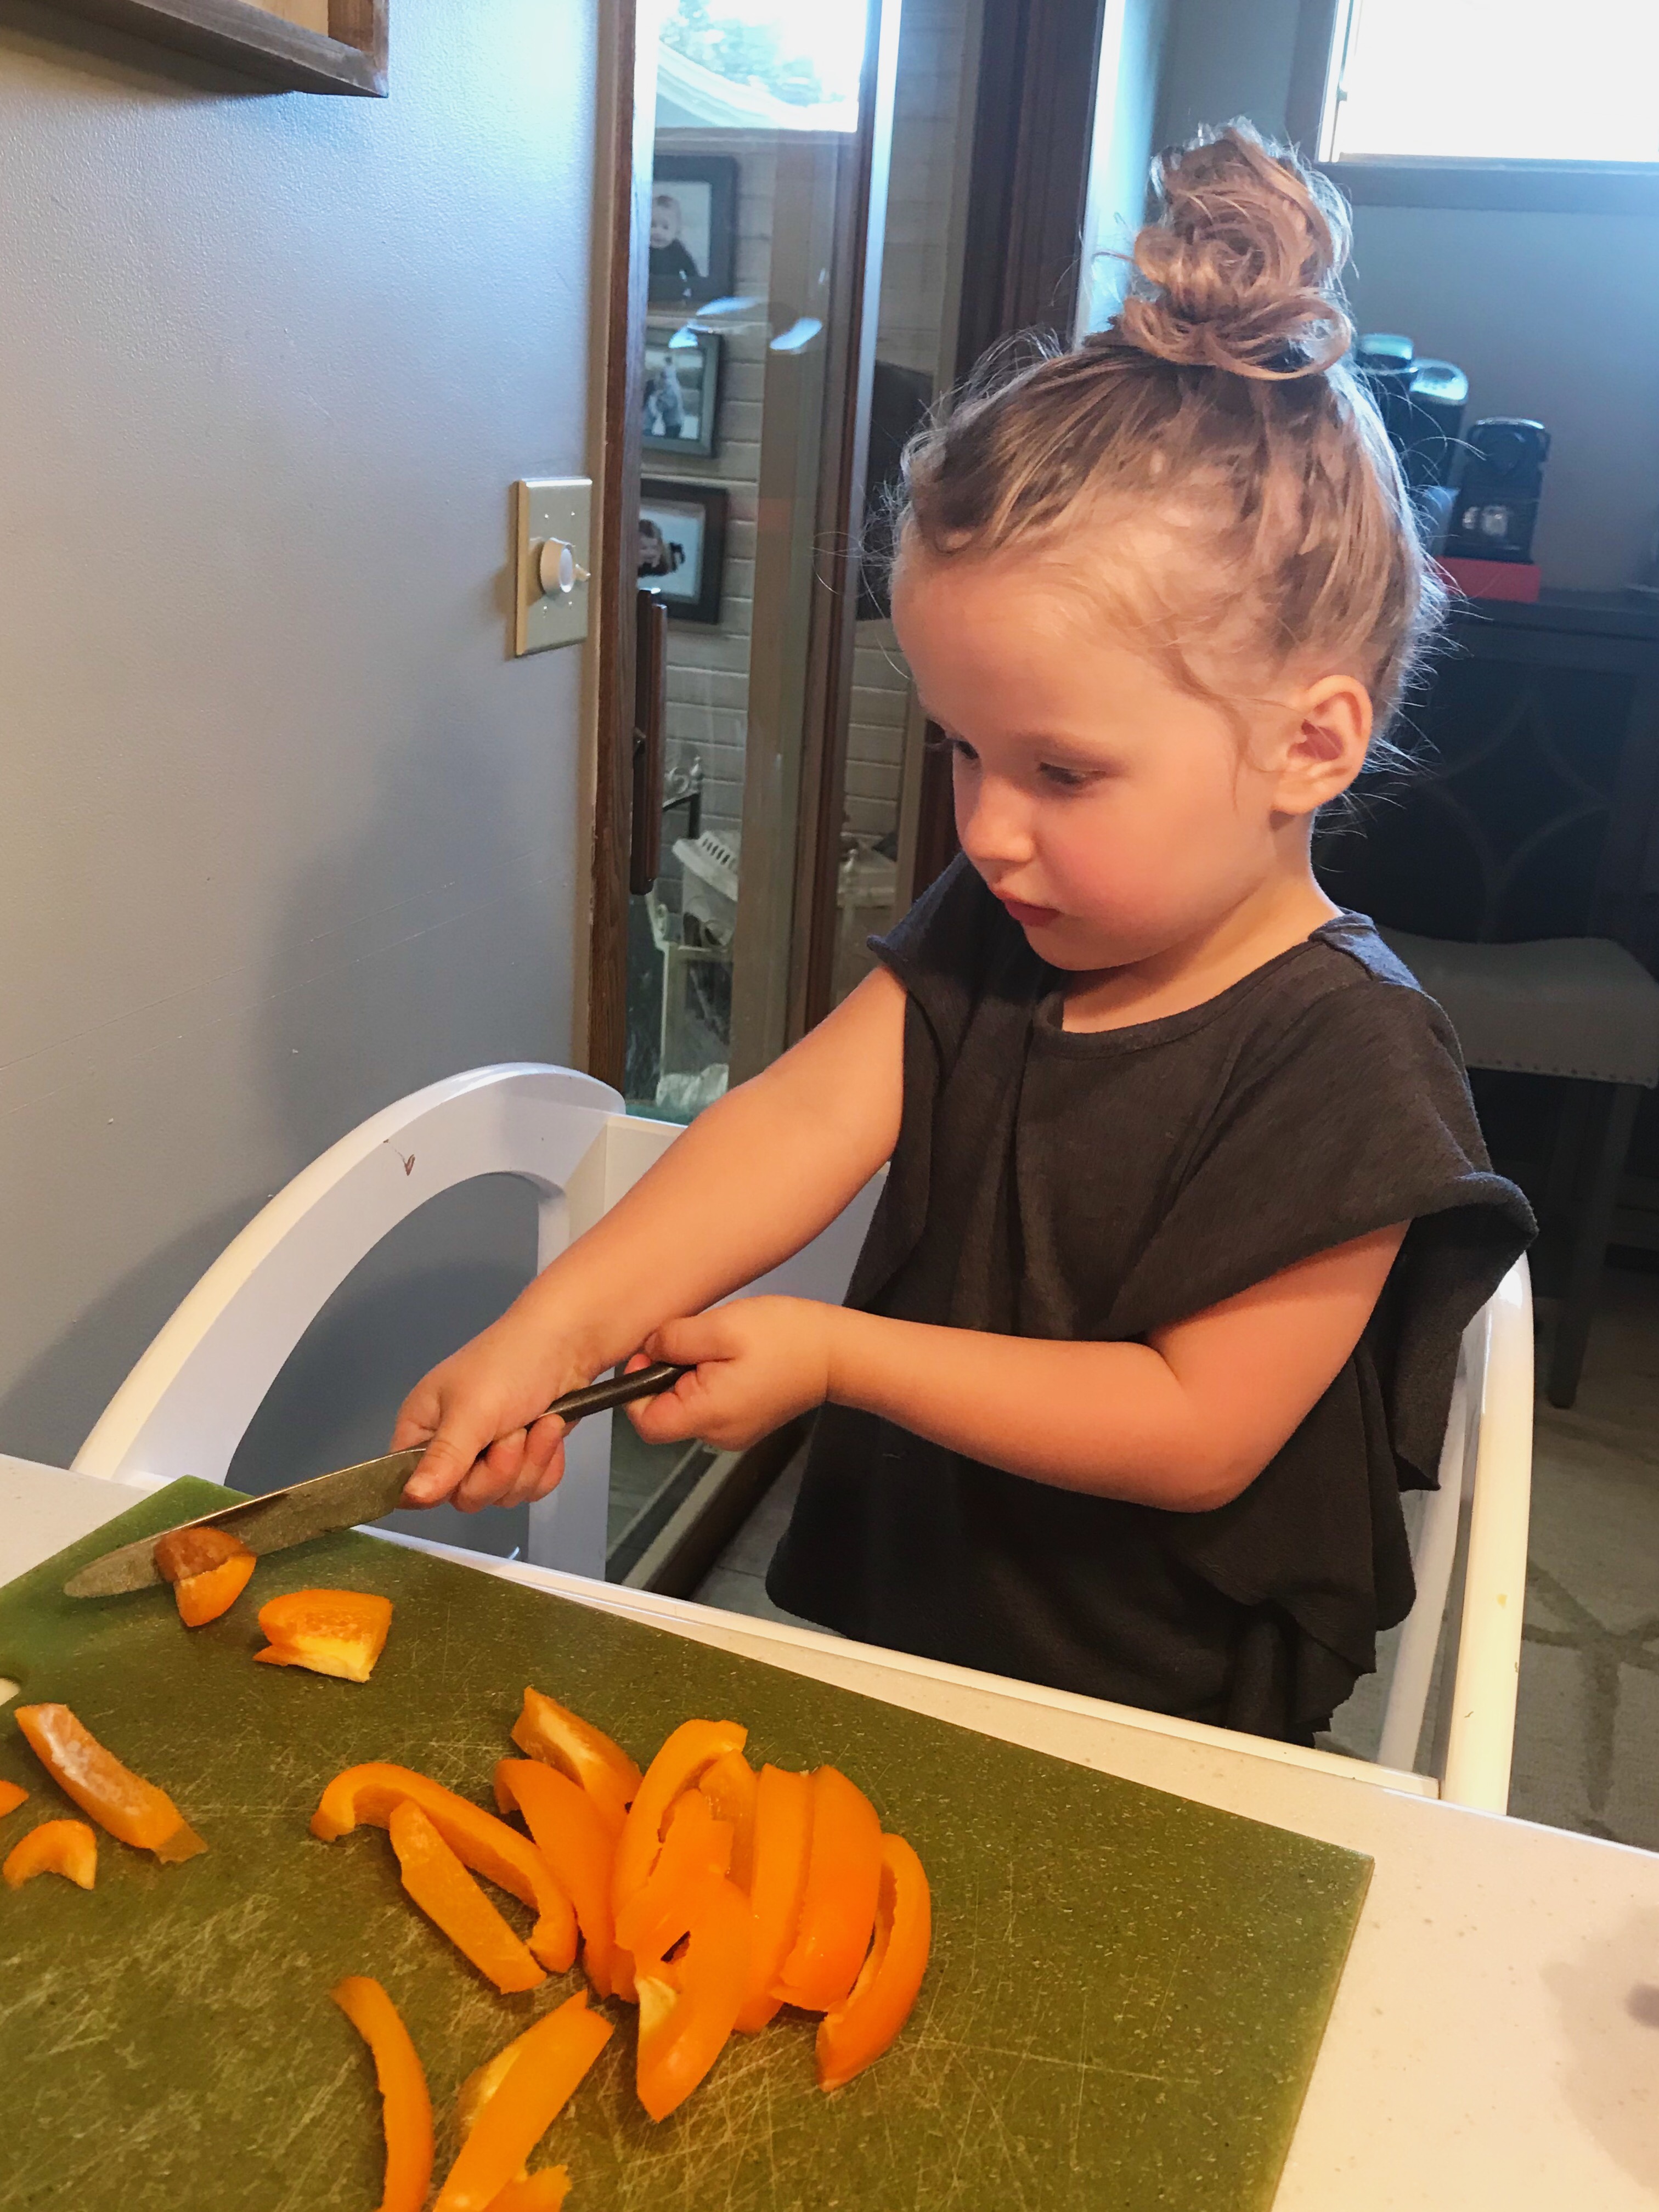 Child eating fresh vegetables